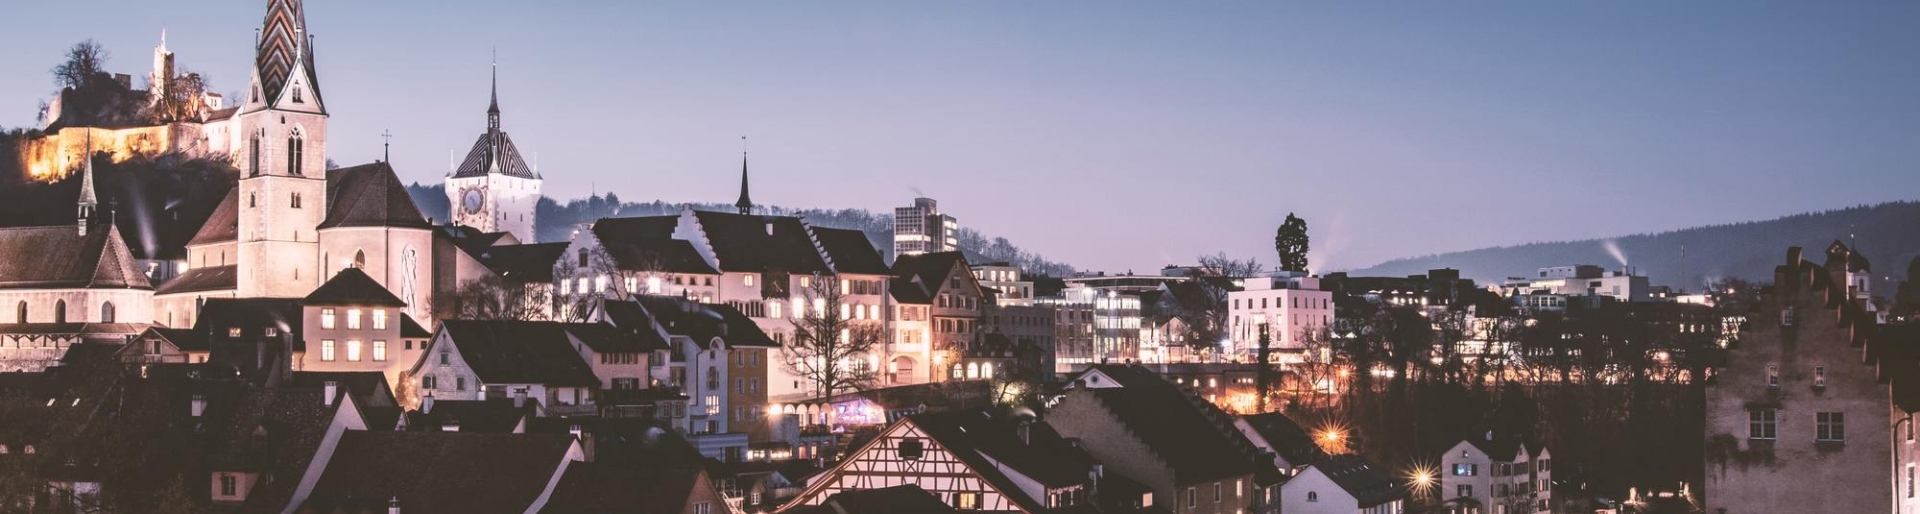 Apartment Hotel in Zürich mit Blick auf die beleuchtete Stadt am Abend 